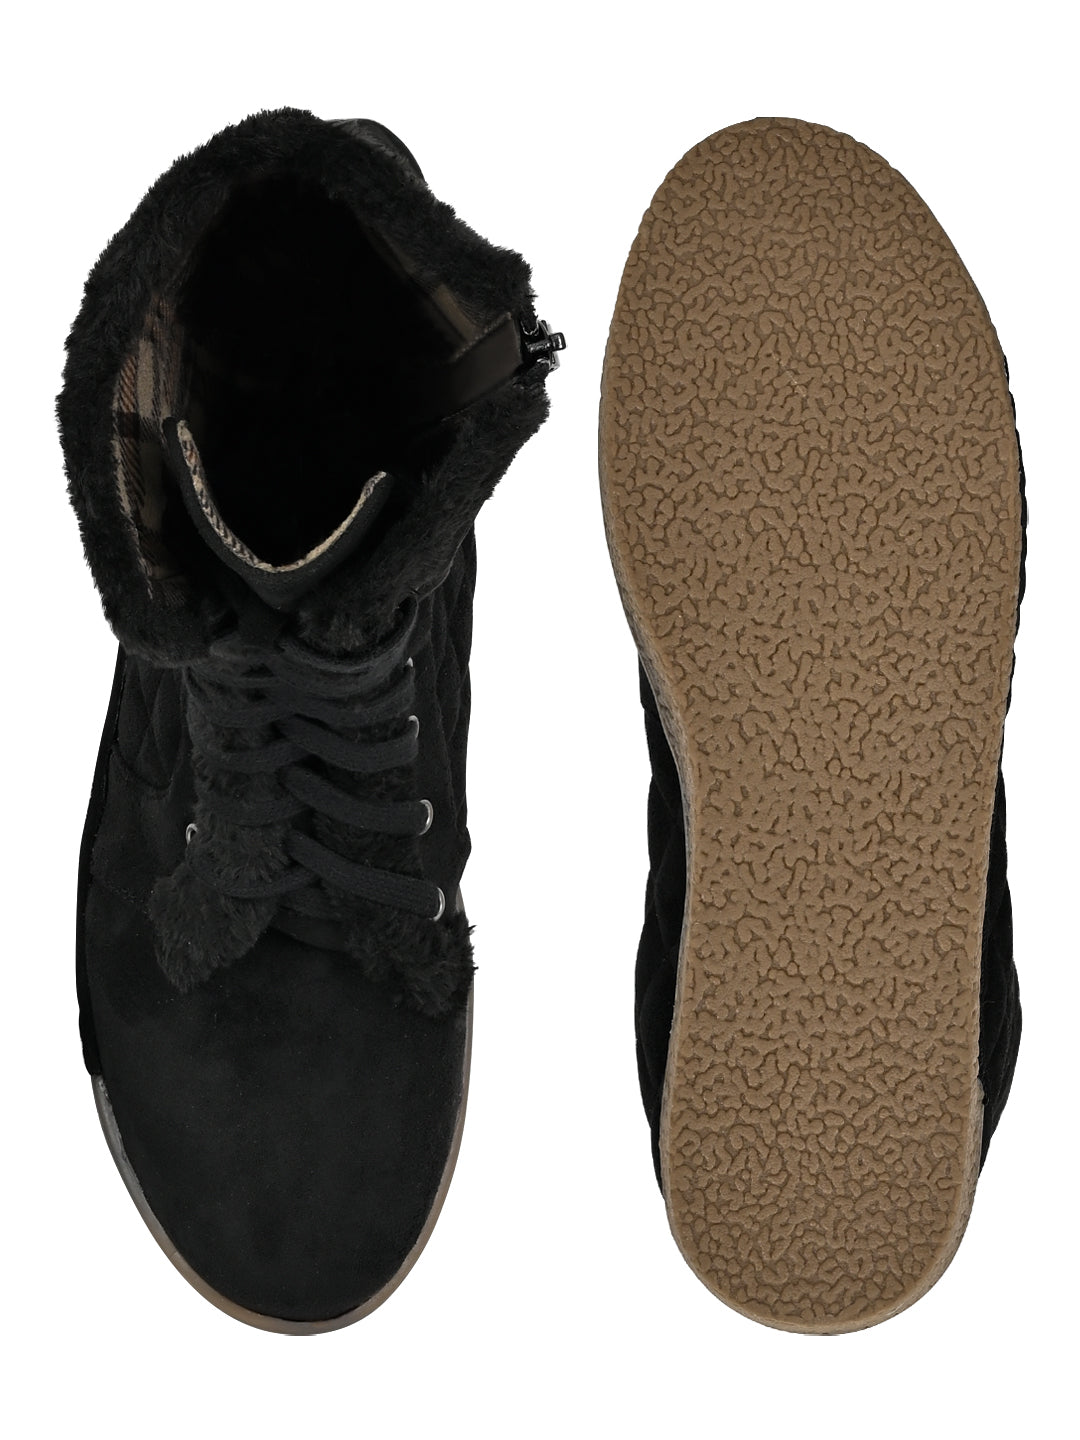 Footwear, Women Footwear, Black Boots